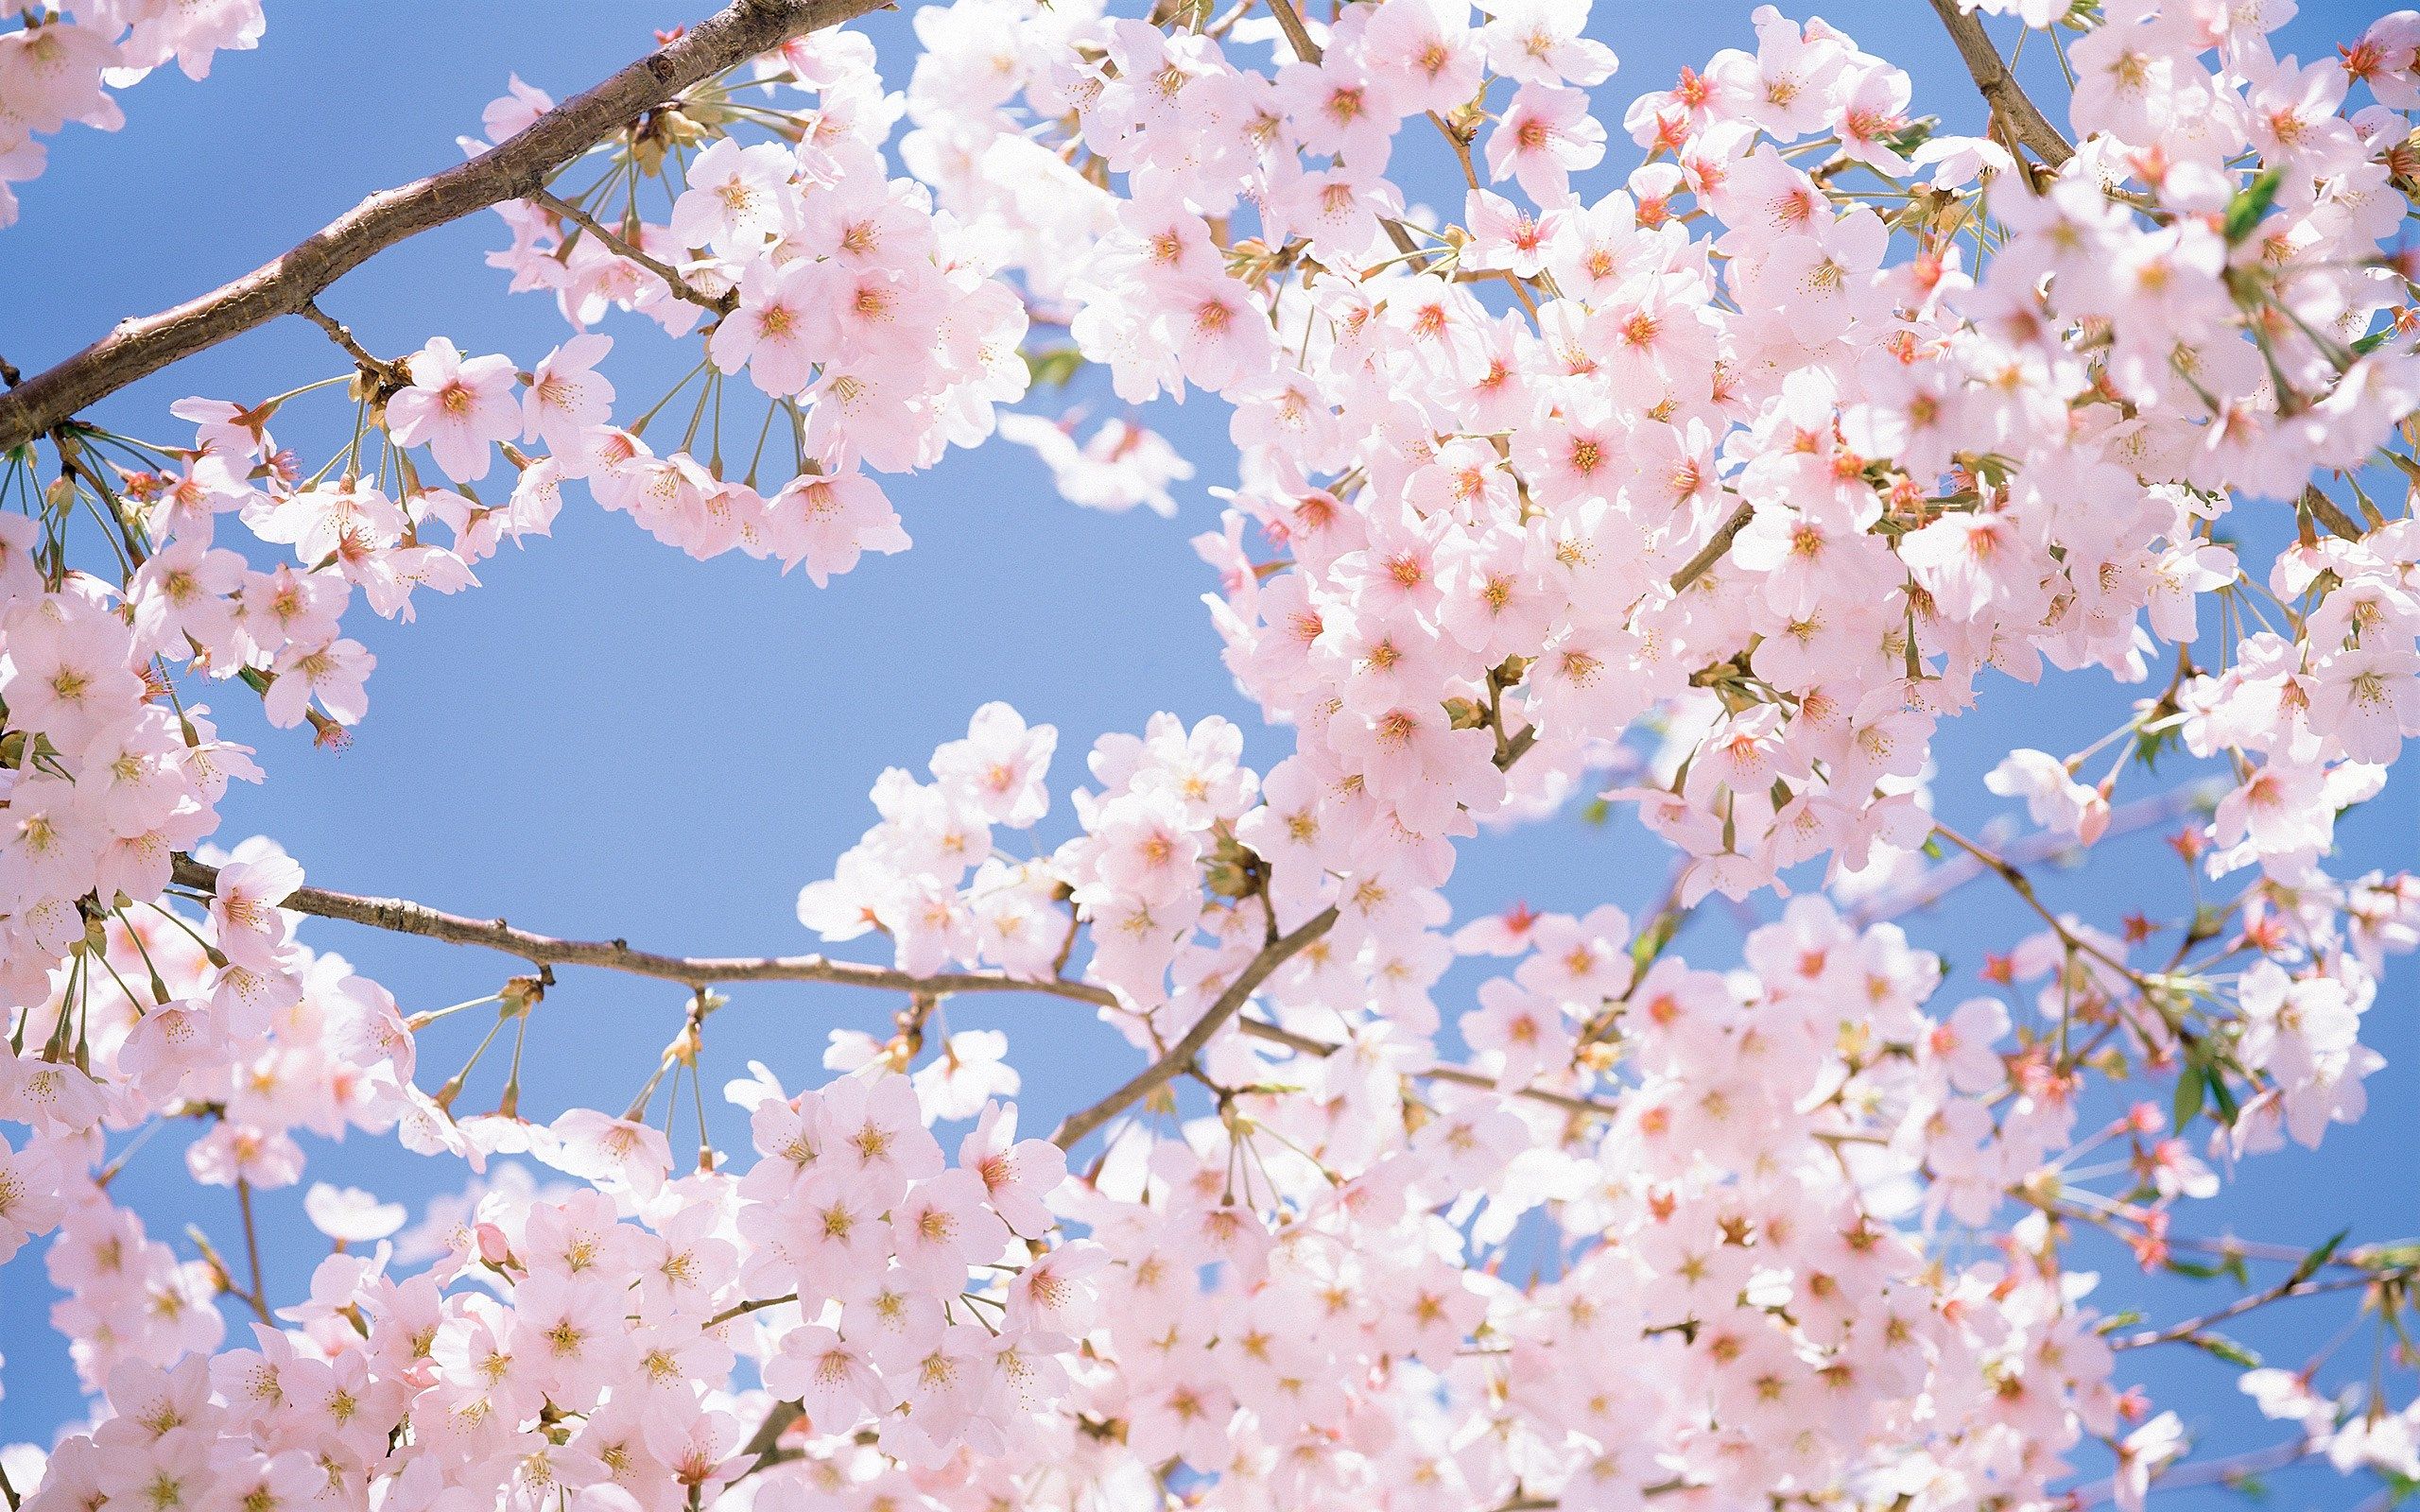 Hoa Anh Đào Nhật Bản: Hãy ngắm nhìn vẻ đẹp tuyệt vời của hoa anh đào thần tiên ngập tràn những tông màu tươi sáng đầy sức sống, cho bạn tràn đầy niềm vui trong lòng và cảm nhận sự thanh tịnh của thiên nhiên tràn đầy tình yêu thương.